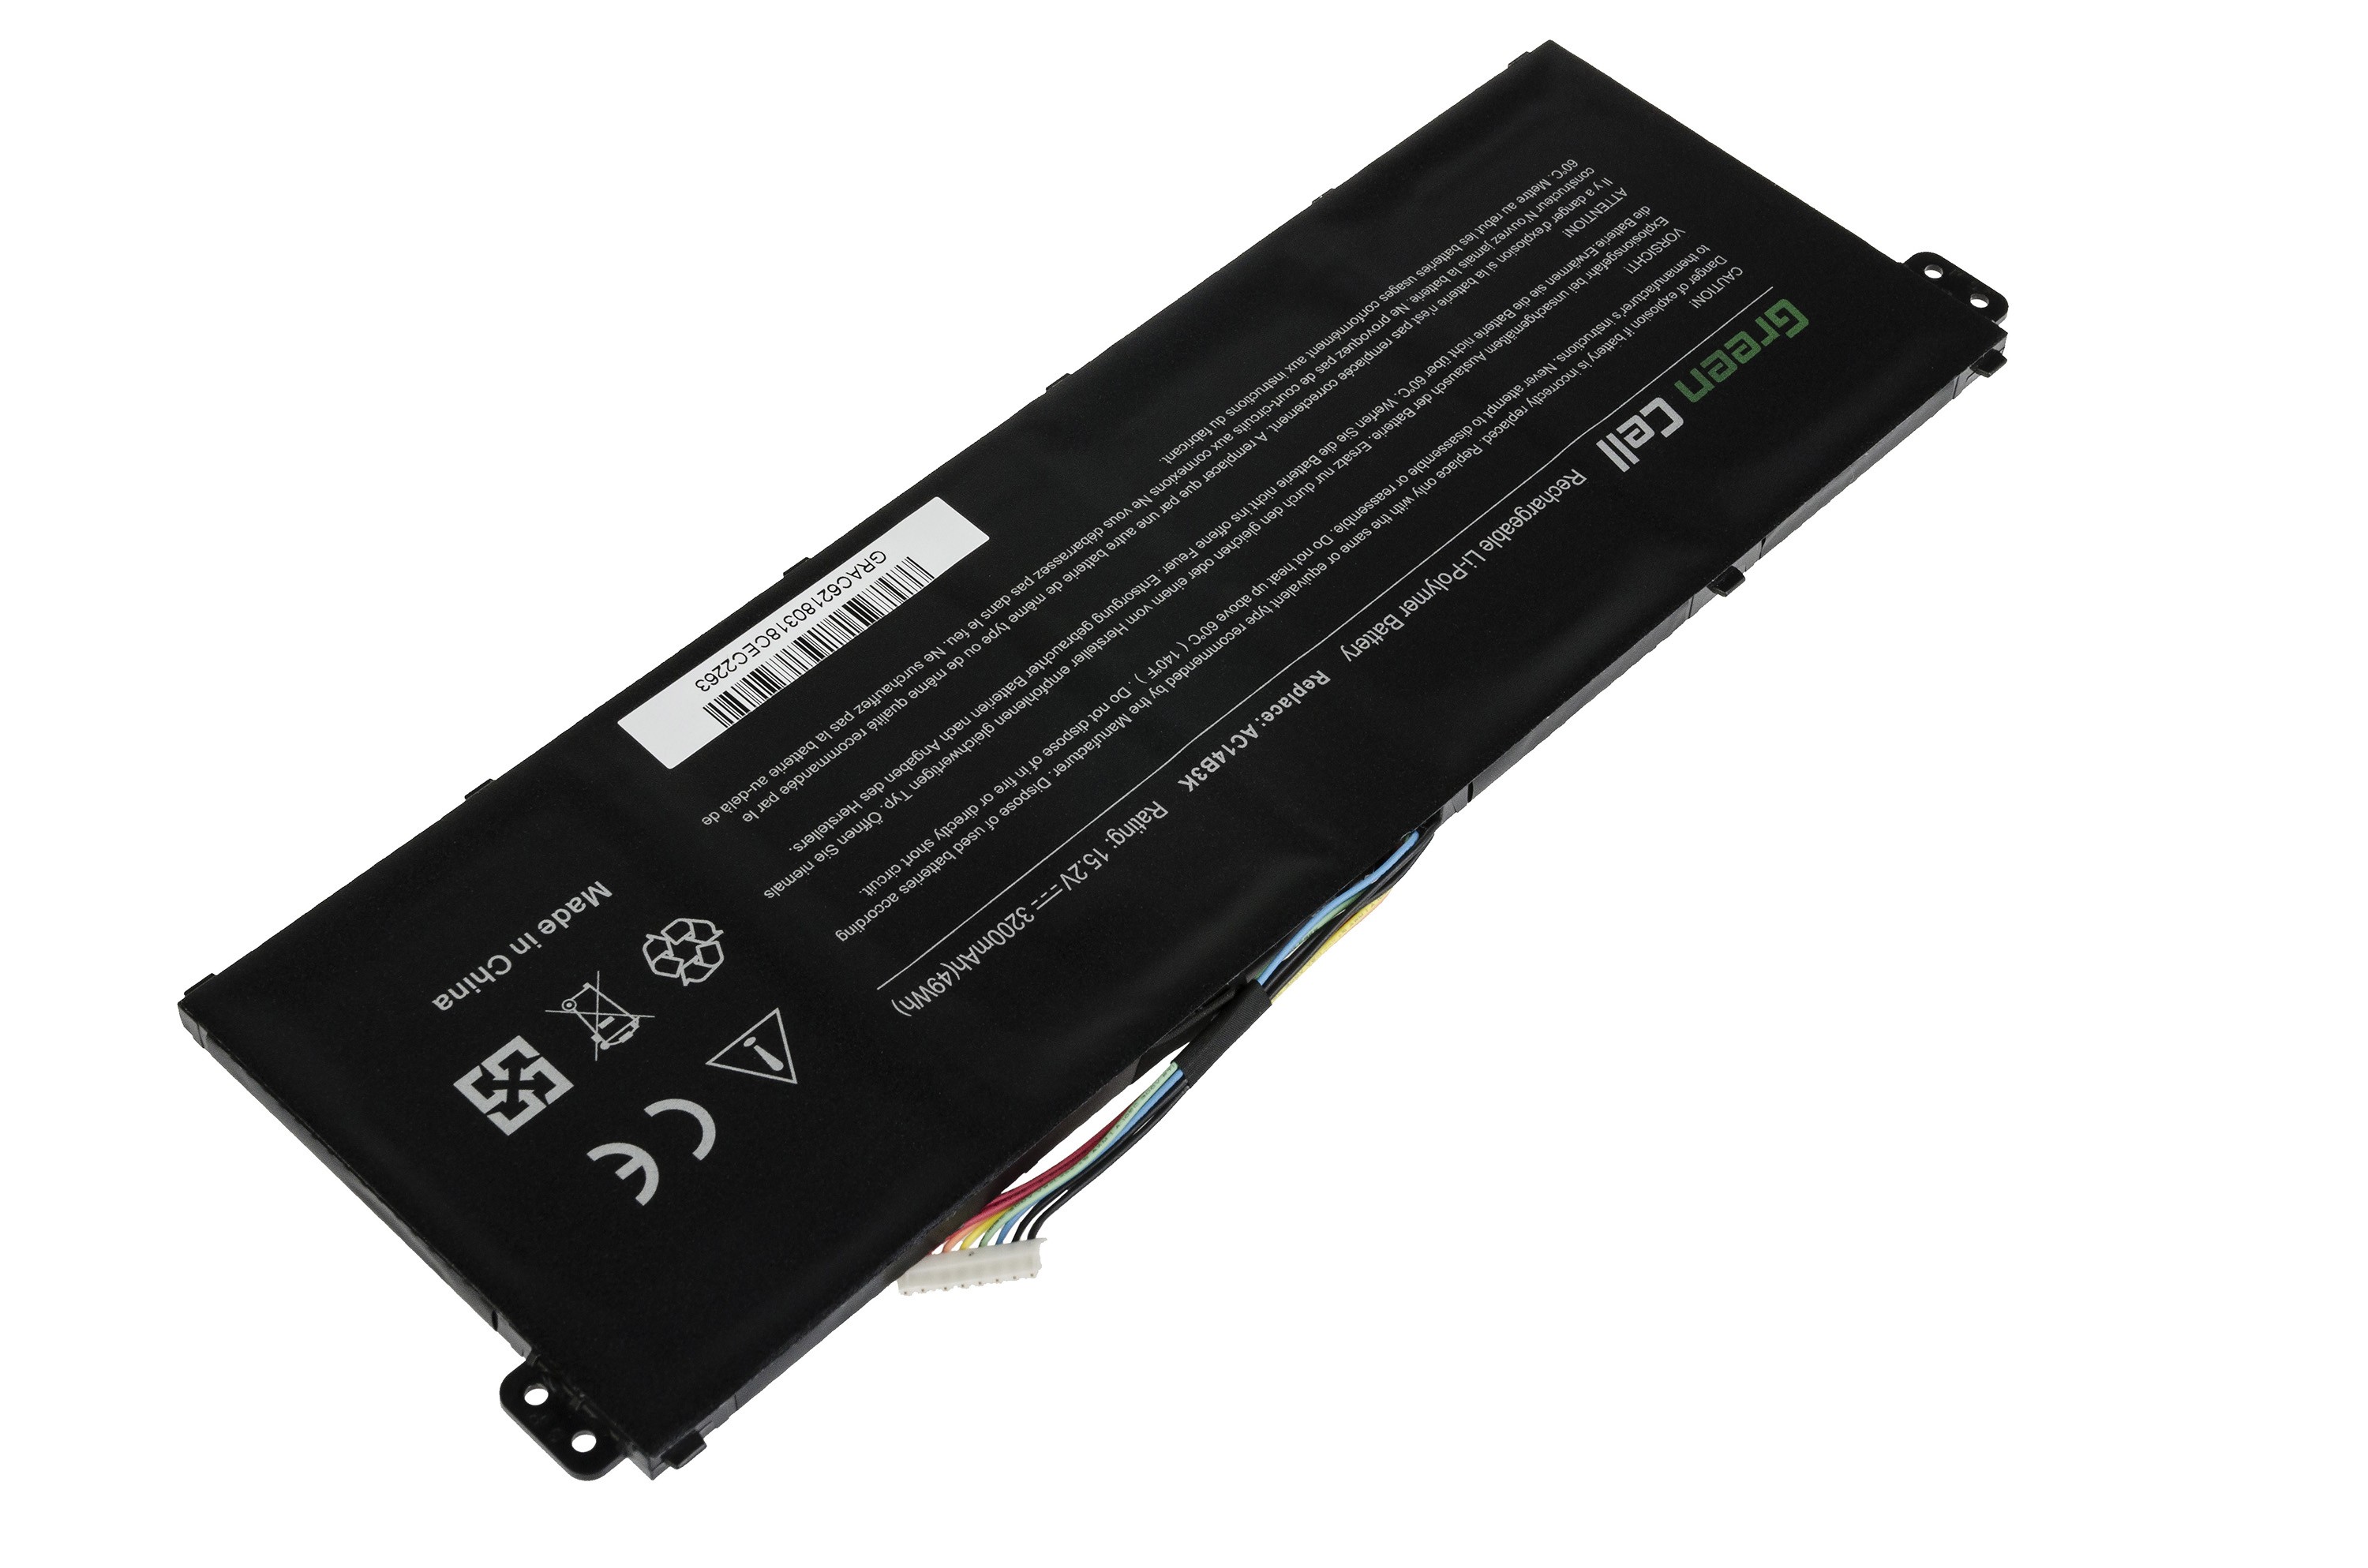 Green Cell laptop batteri til Acer Aspire 5 A515 A517 E15 / 15,2V 3000mAh